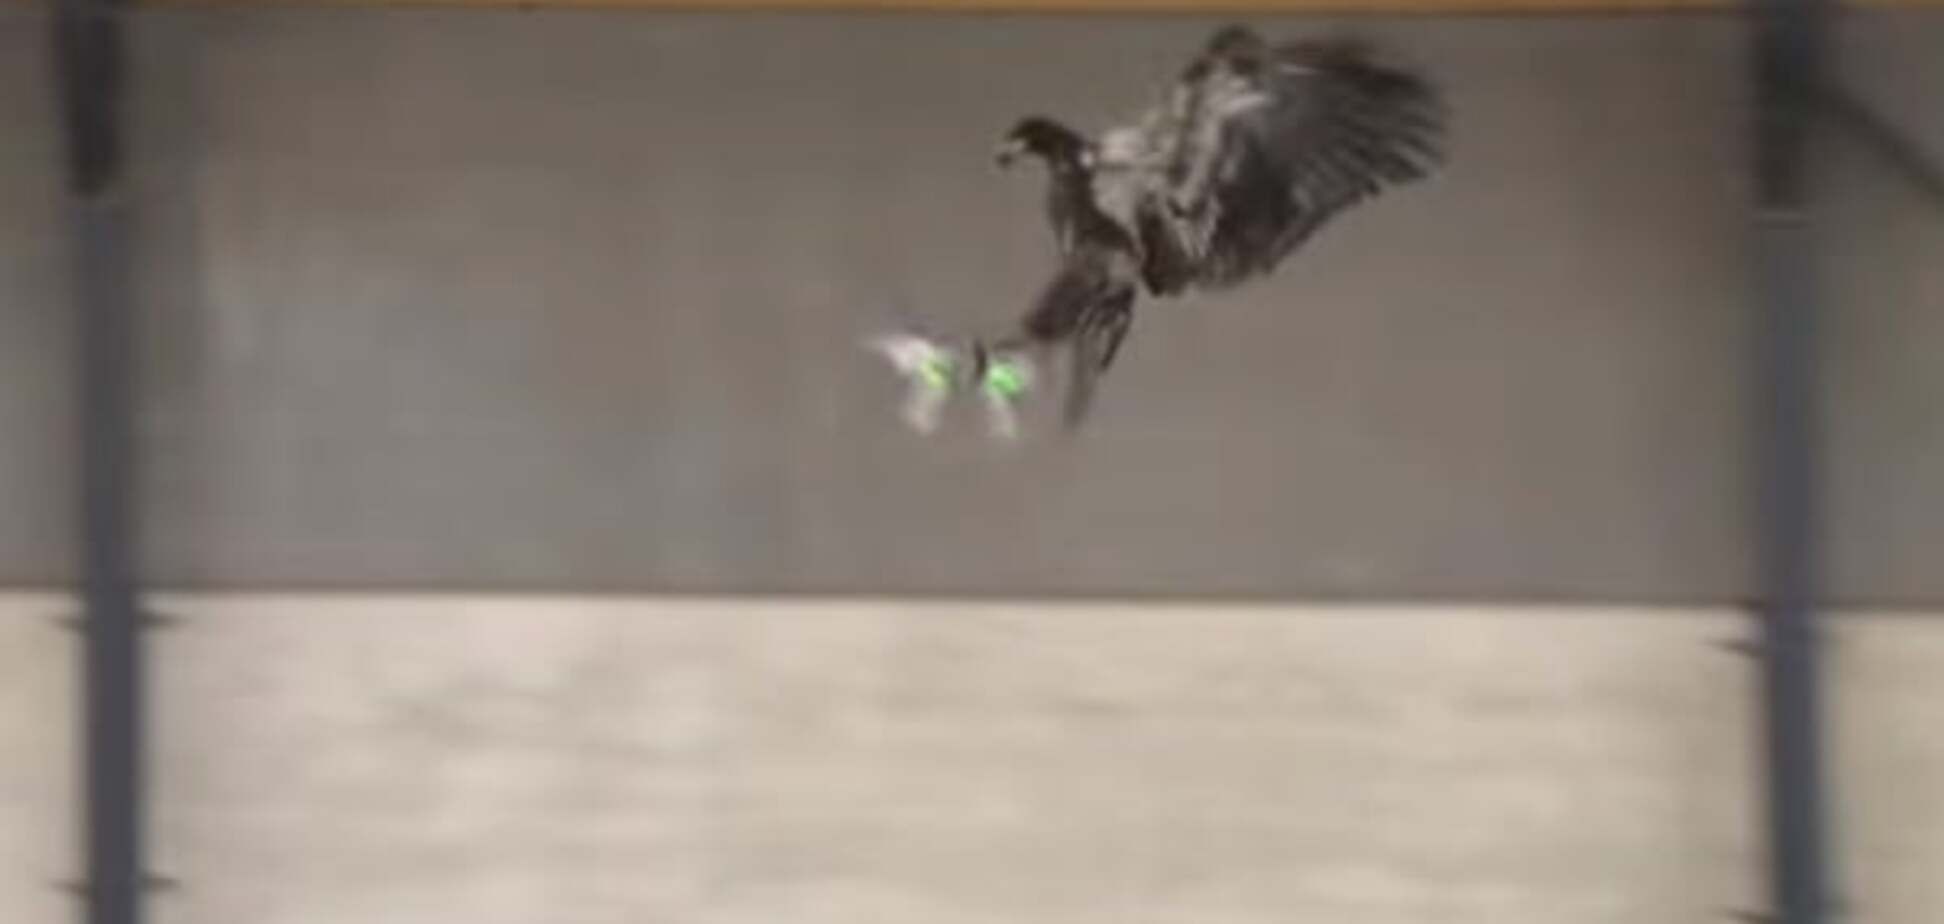 Дронолов: поліція привчила орла ловити дронів. Відеофакт